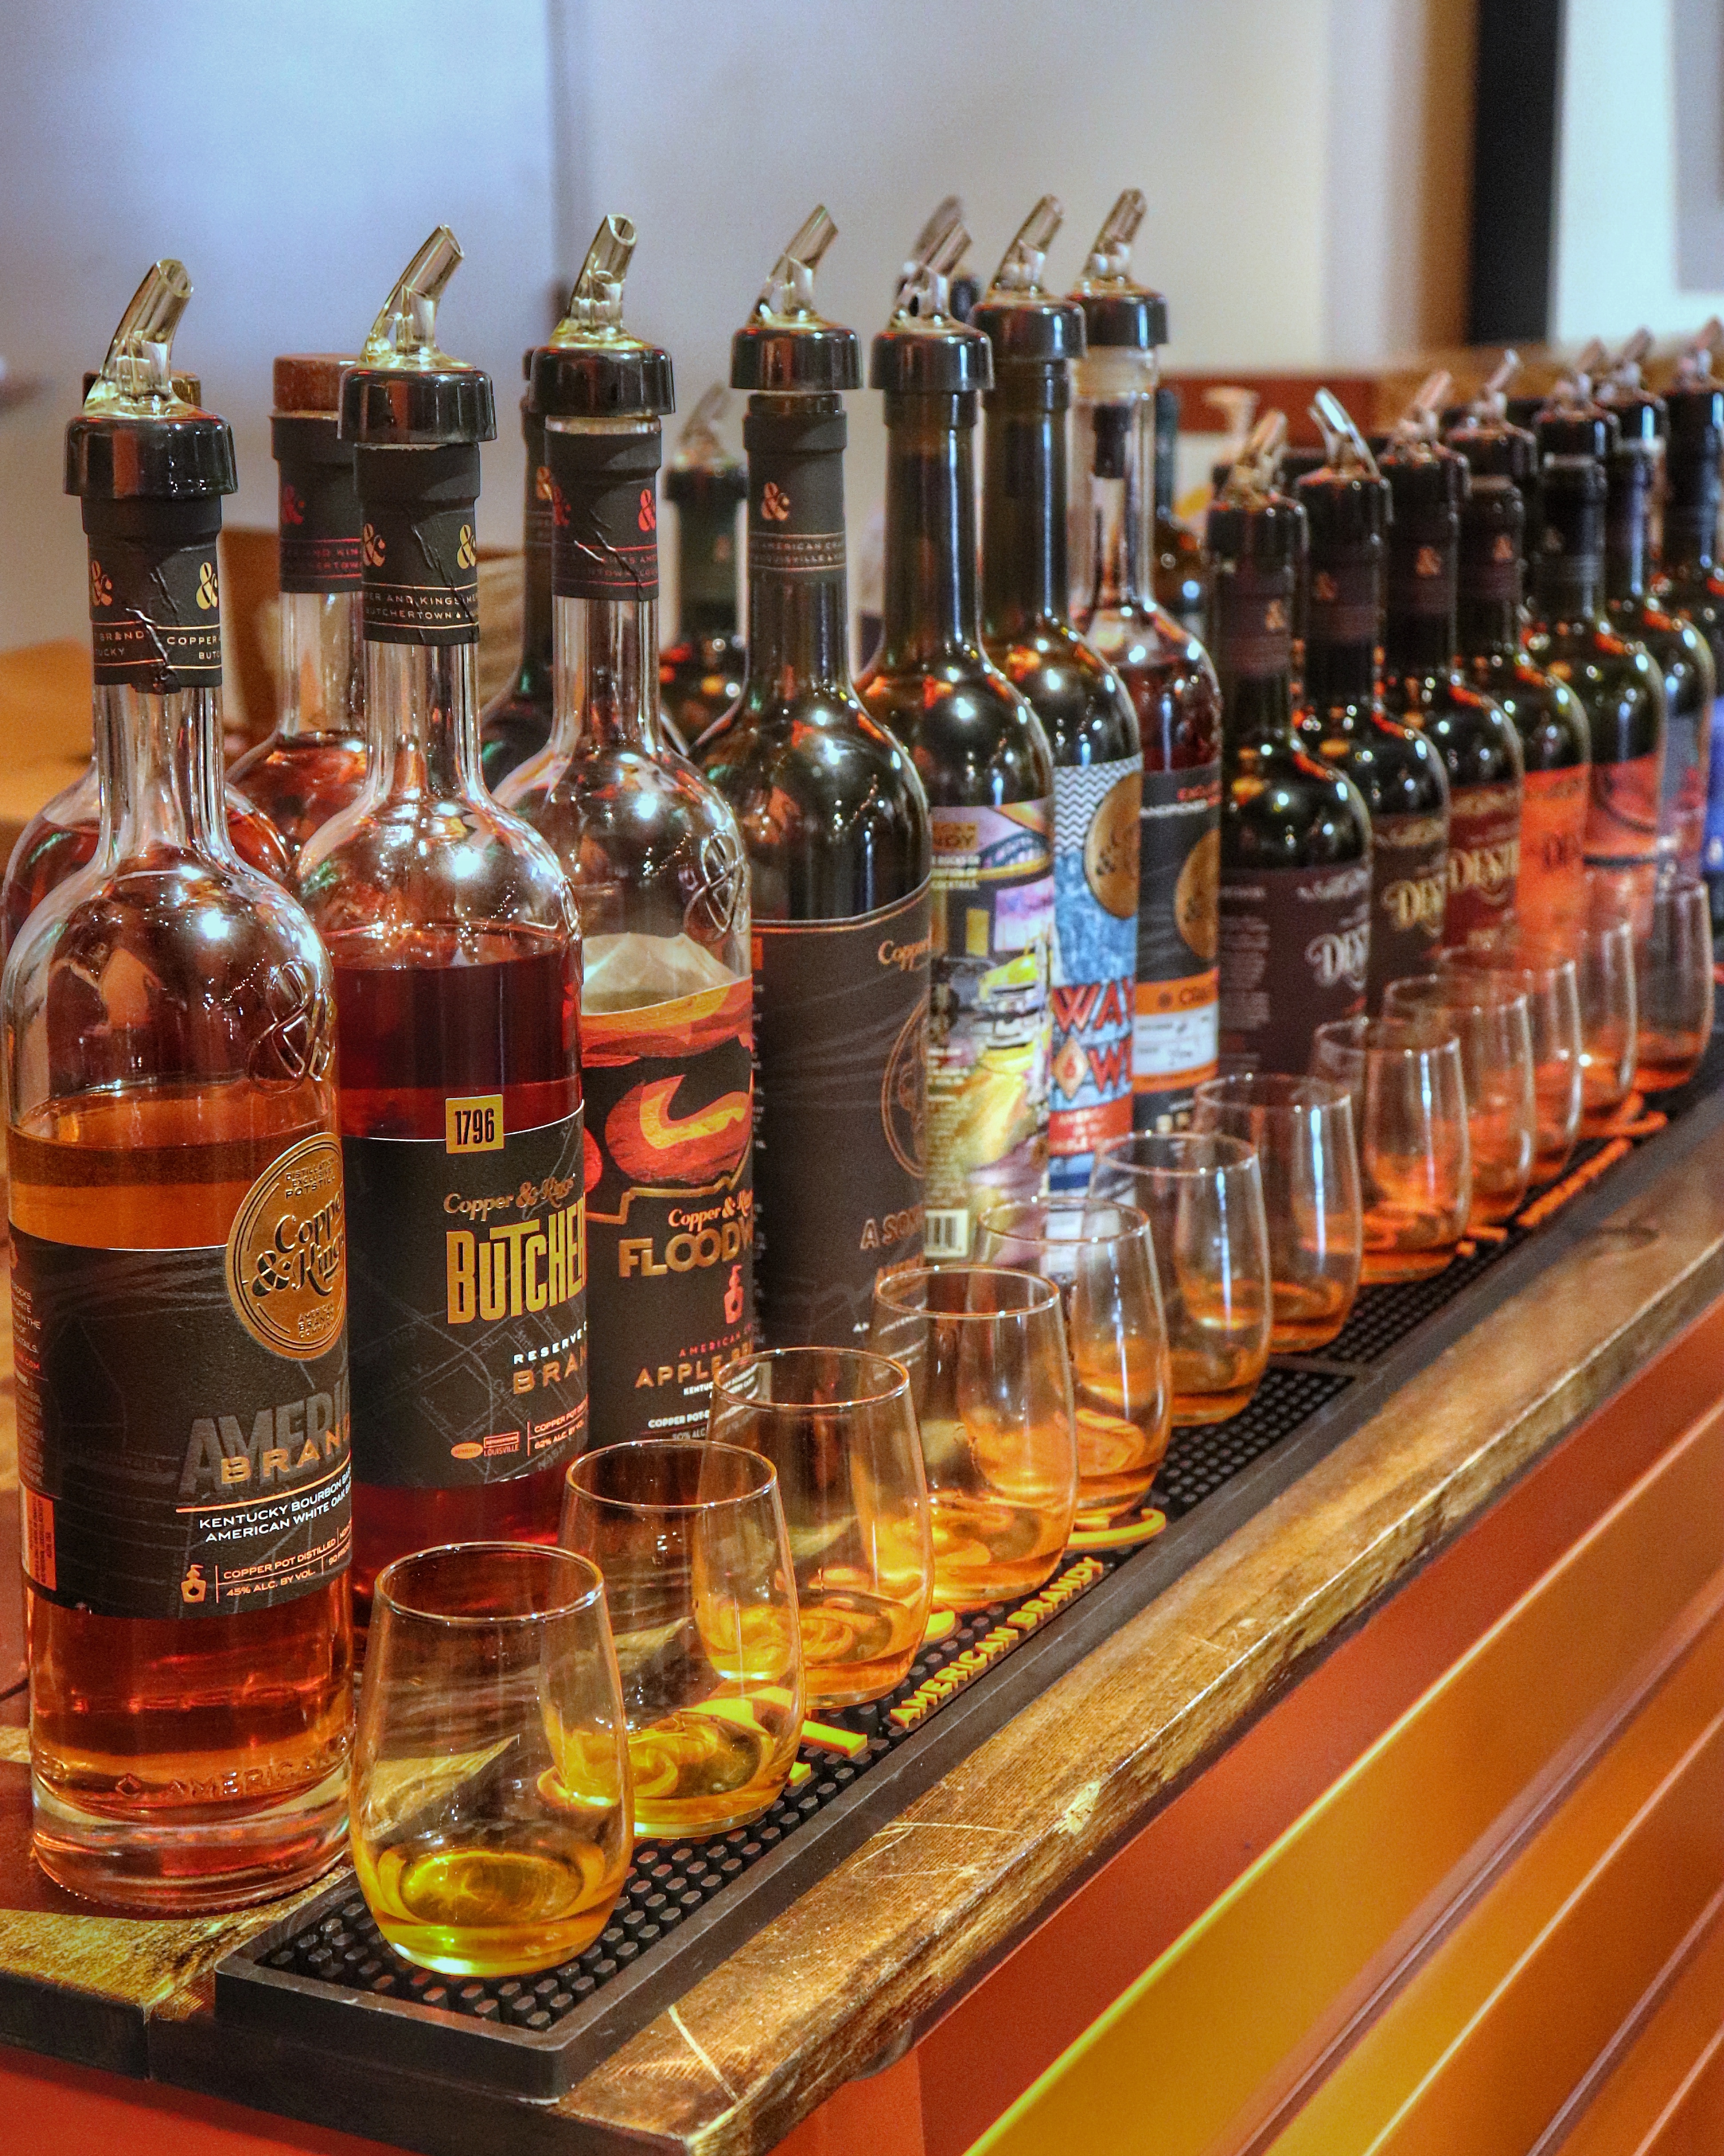 Line up of bottles